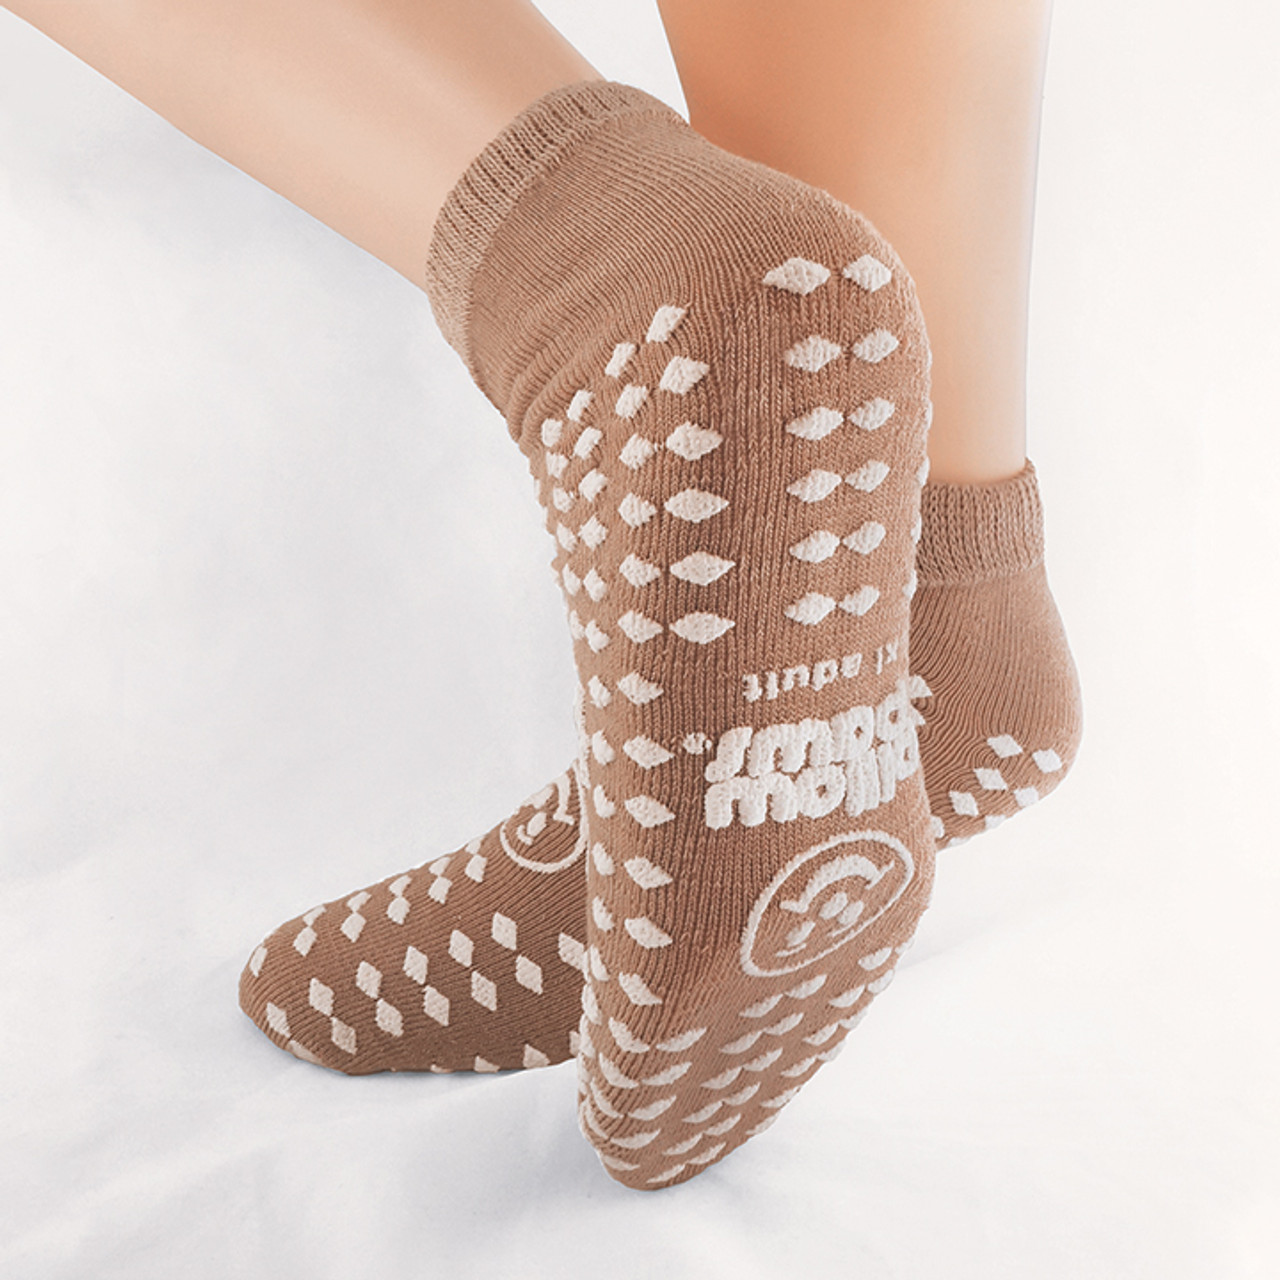 Women's Winter Socks Soft Warm Cozy Fuzzy Fleece-lined Thick Slipper Socks